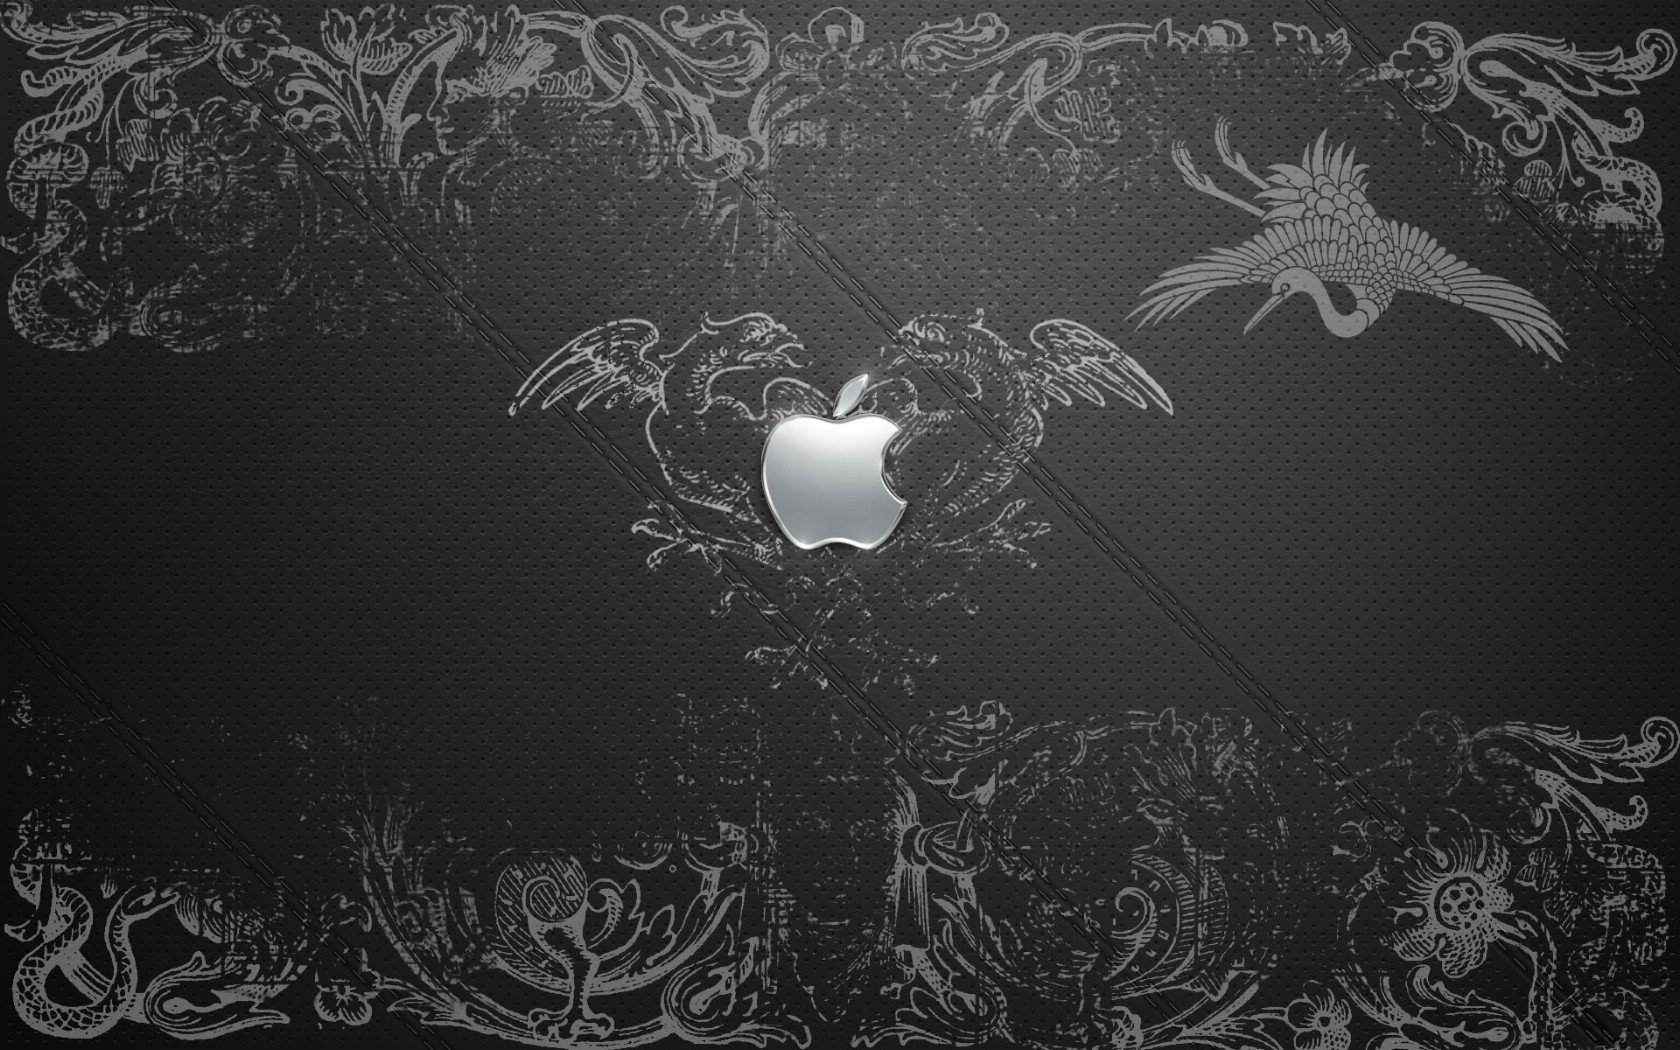 壁纸1680x1050Apple主题 61 16壁纸 Apple主题壁纸 Apple主题图片 Apple主题素材 系统壁纸 系统图库 系统图片素材桌面壁纸